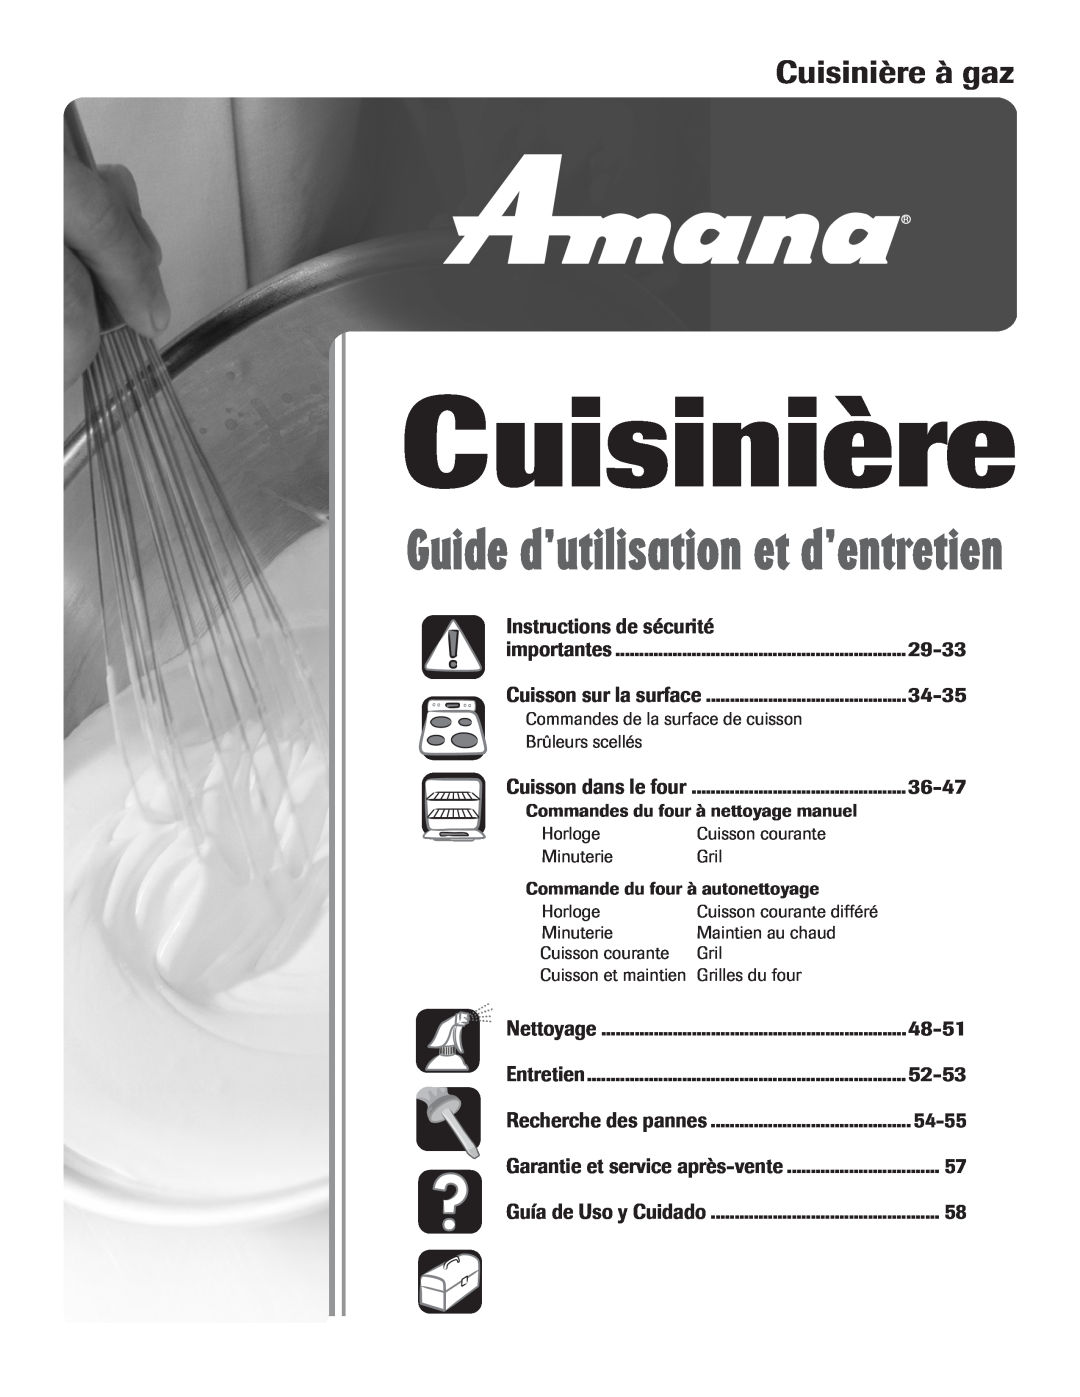 Amana pmn Cuisinière à gaz, Instructions de sécurité, 29-33, 34-35, 36-47, 48-51, 52-53, 54-55 